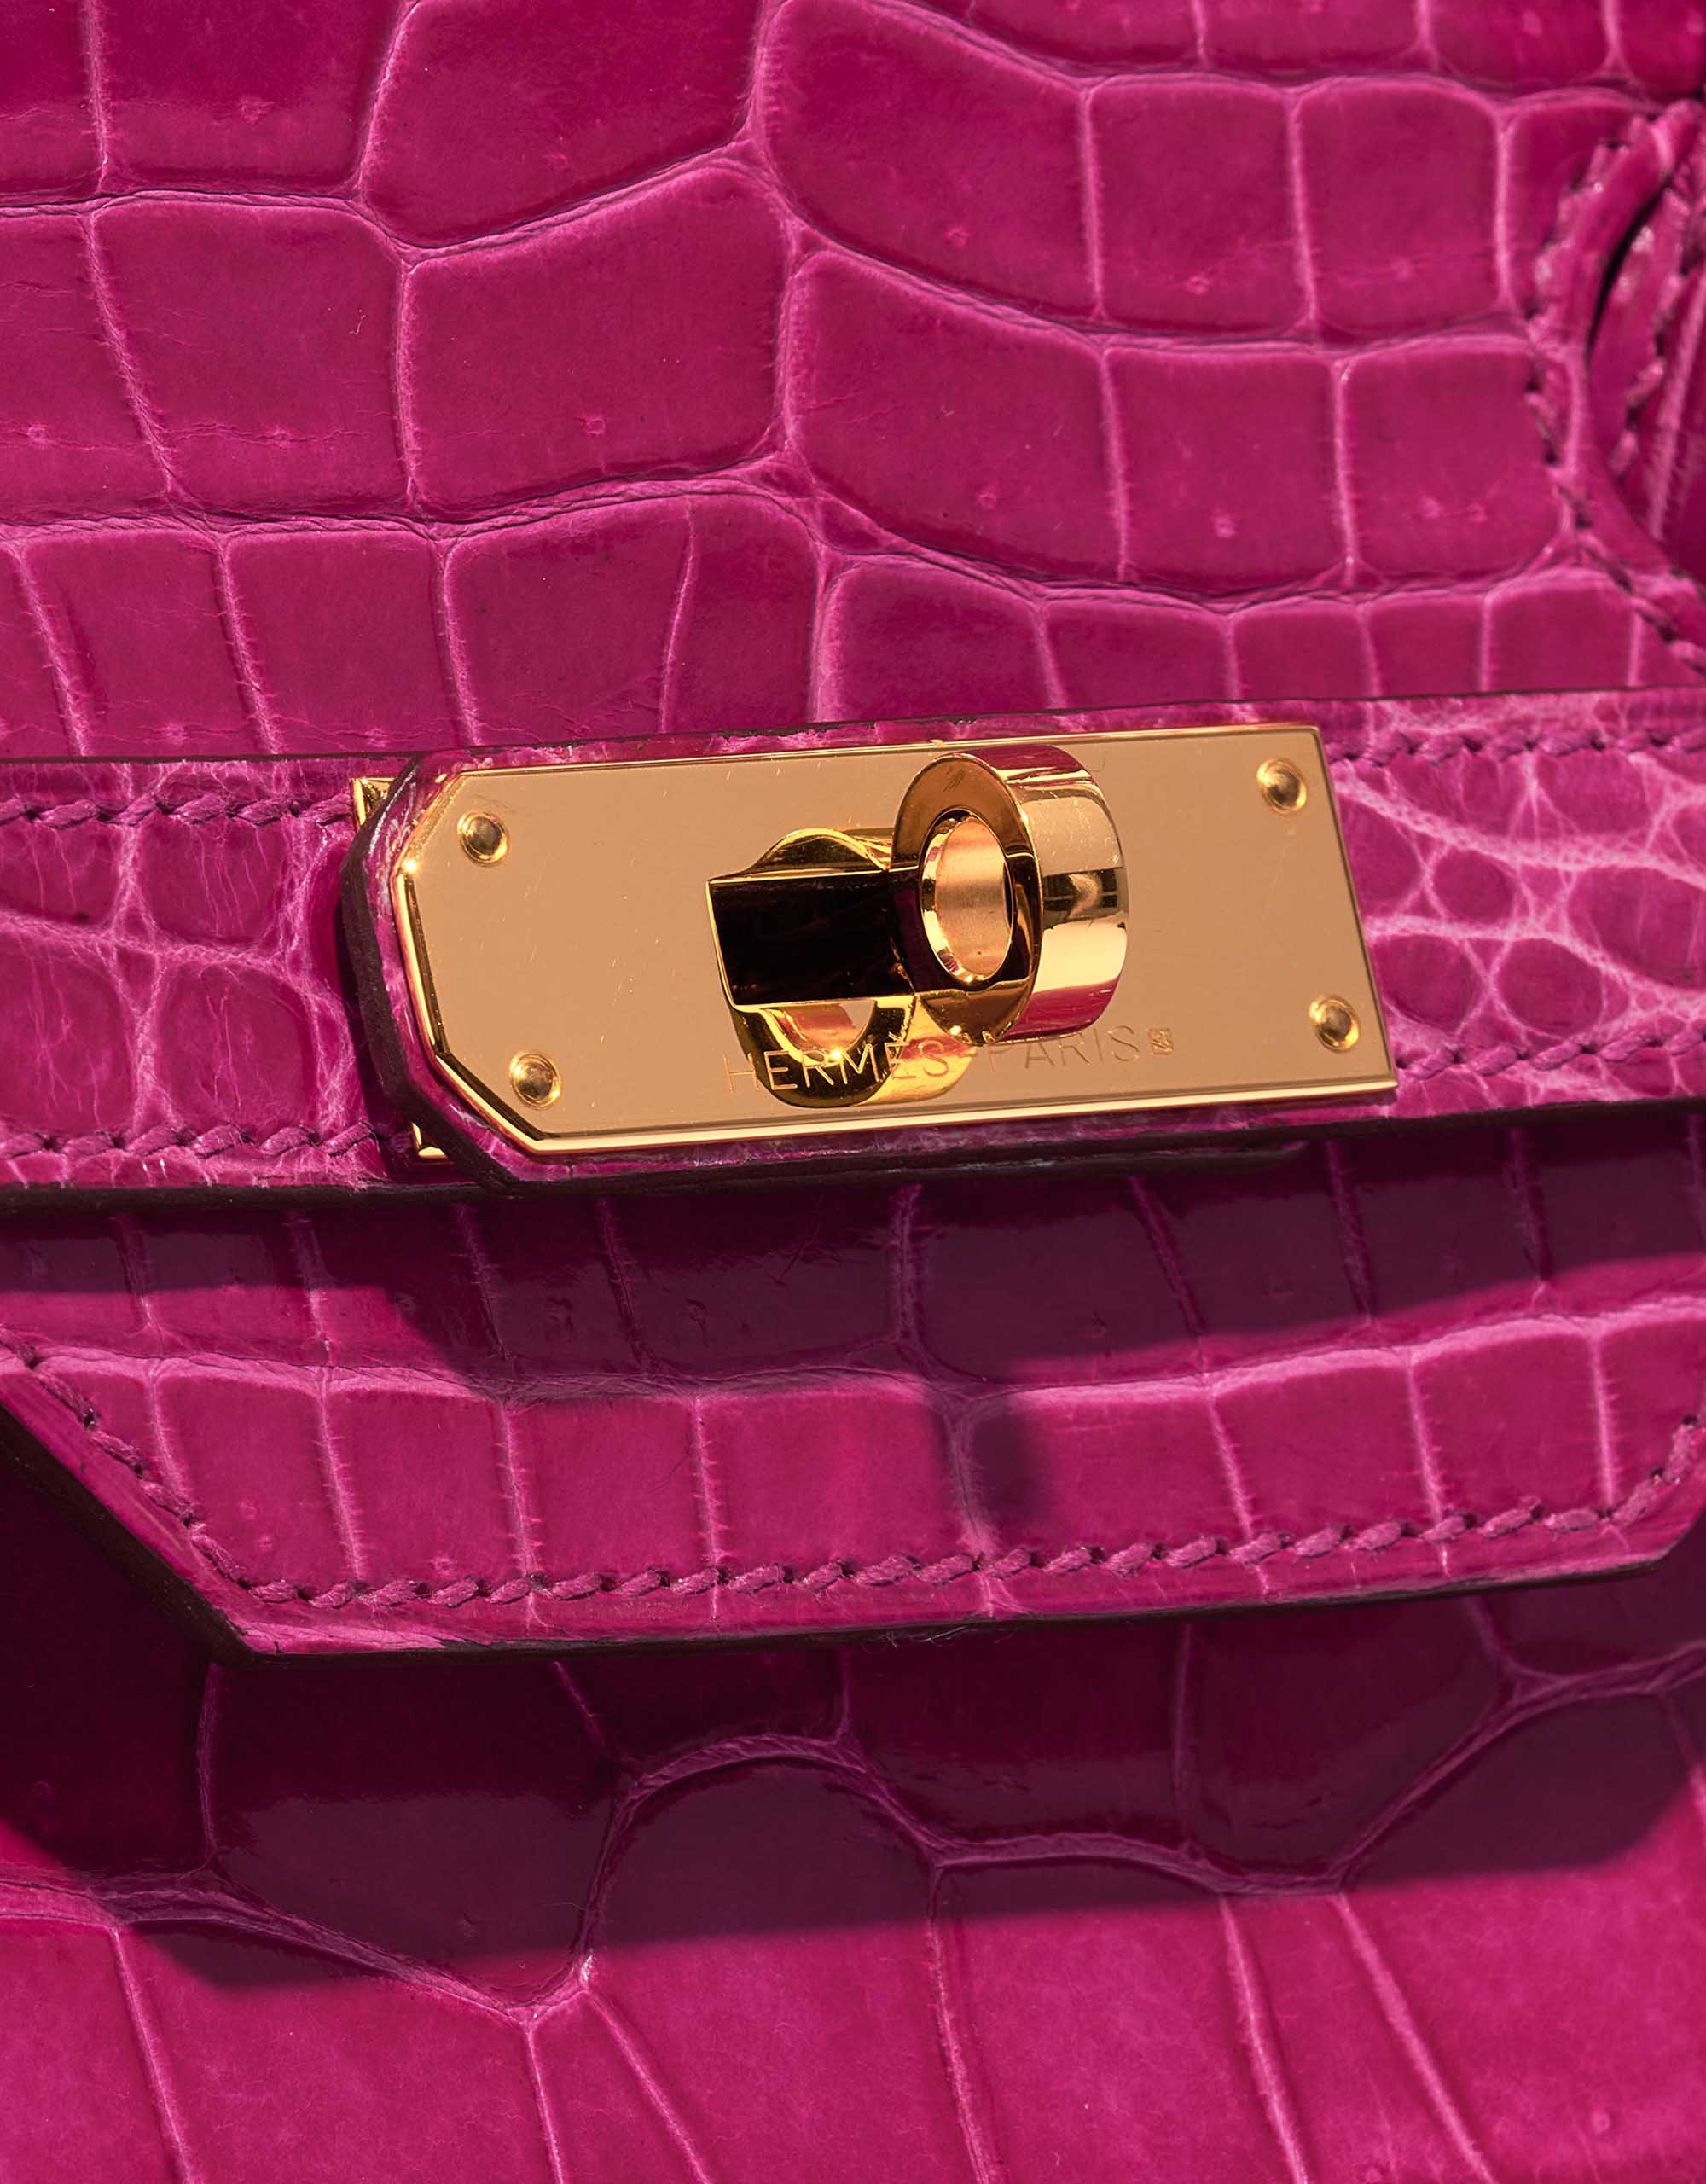 Sac Hermès d'occasion Birkin 35 Porosus Crocodile Rose Scheherazade Pink Closing System | Vendez votre sac de créateur sur Saclab.com